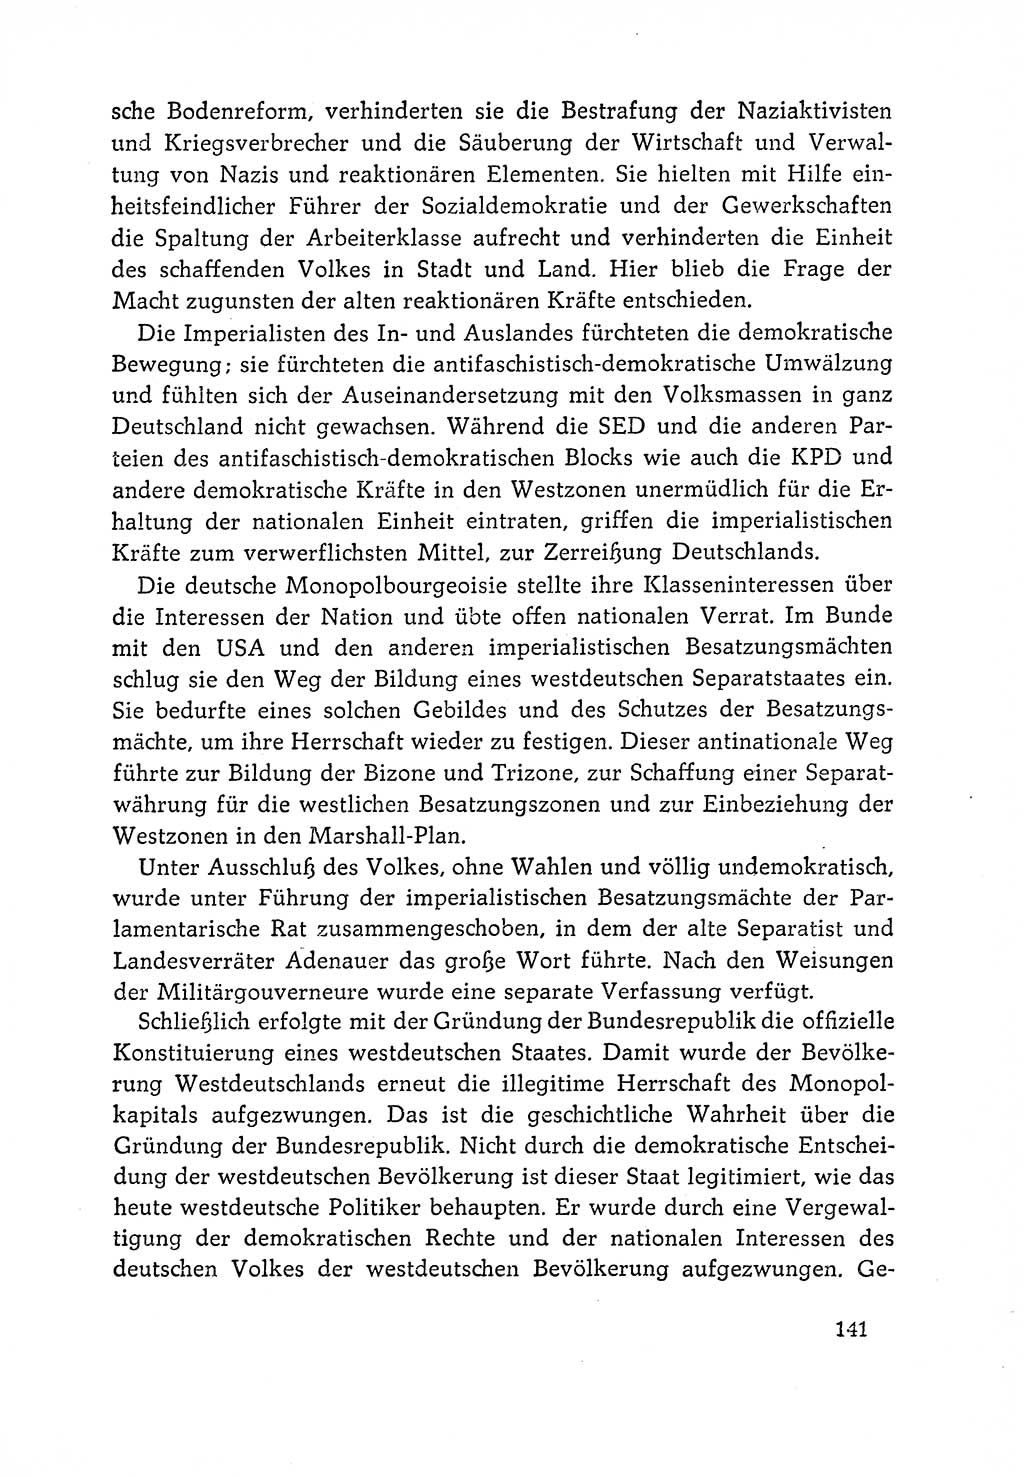 Dokumente der Sozialistischen Einheitspartei Deutschlands (SED) [Deutsche Demokratische Republik (DDR)] 1964-1965, Seite 141 (Dok. SED DDR 1964-1965, S. 141)